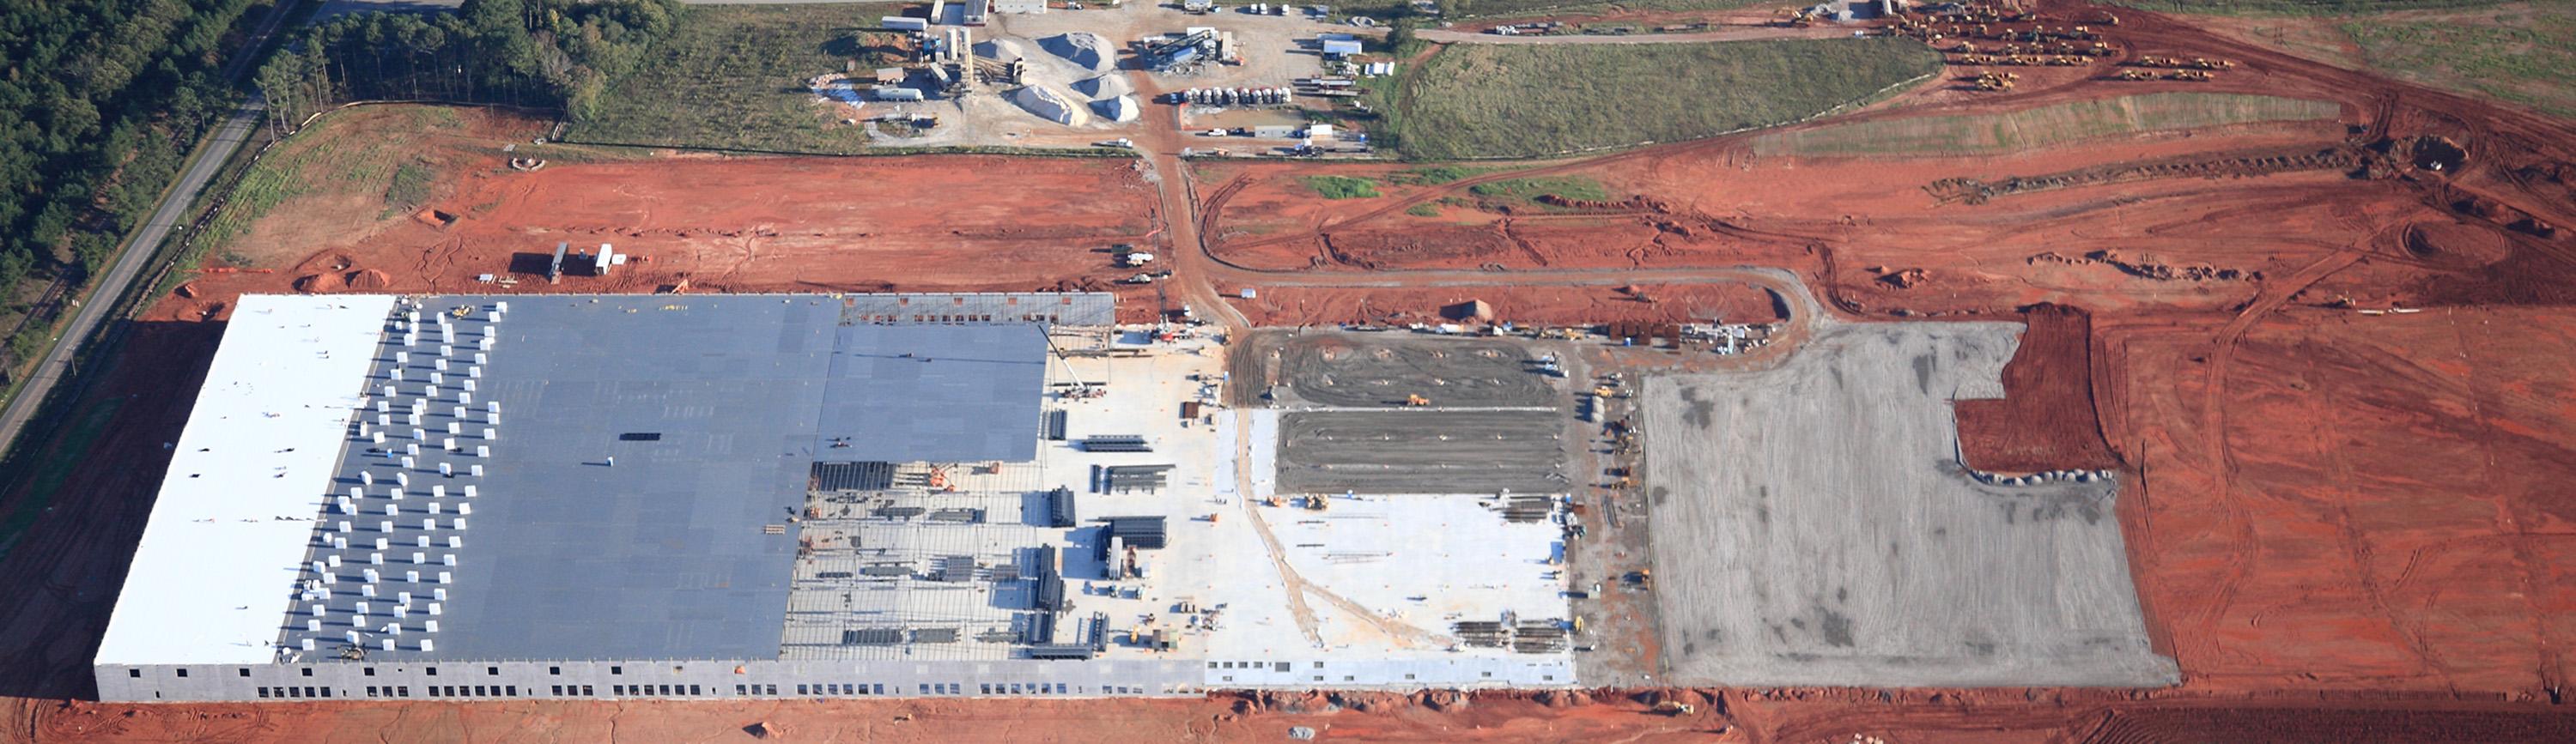 Atlanta Construction Progress Aerial Photography